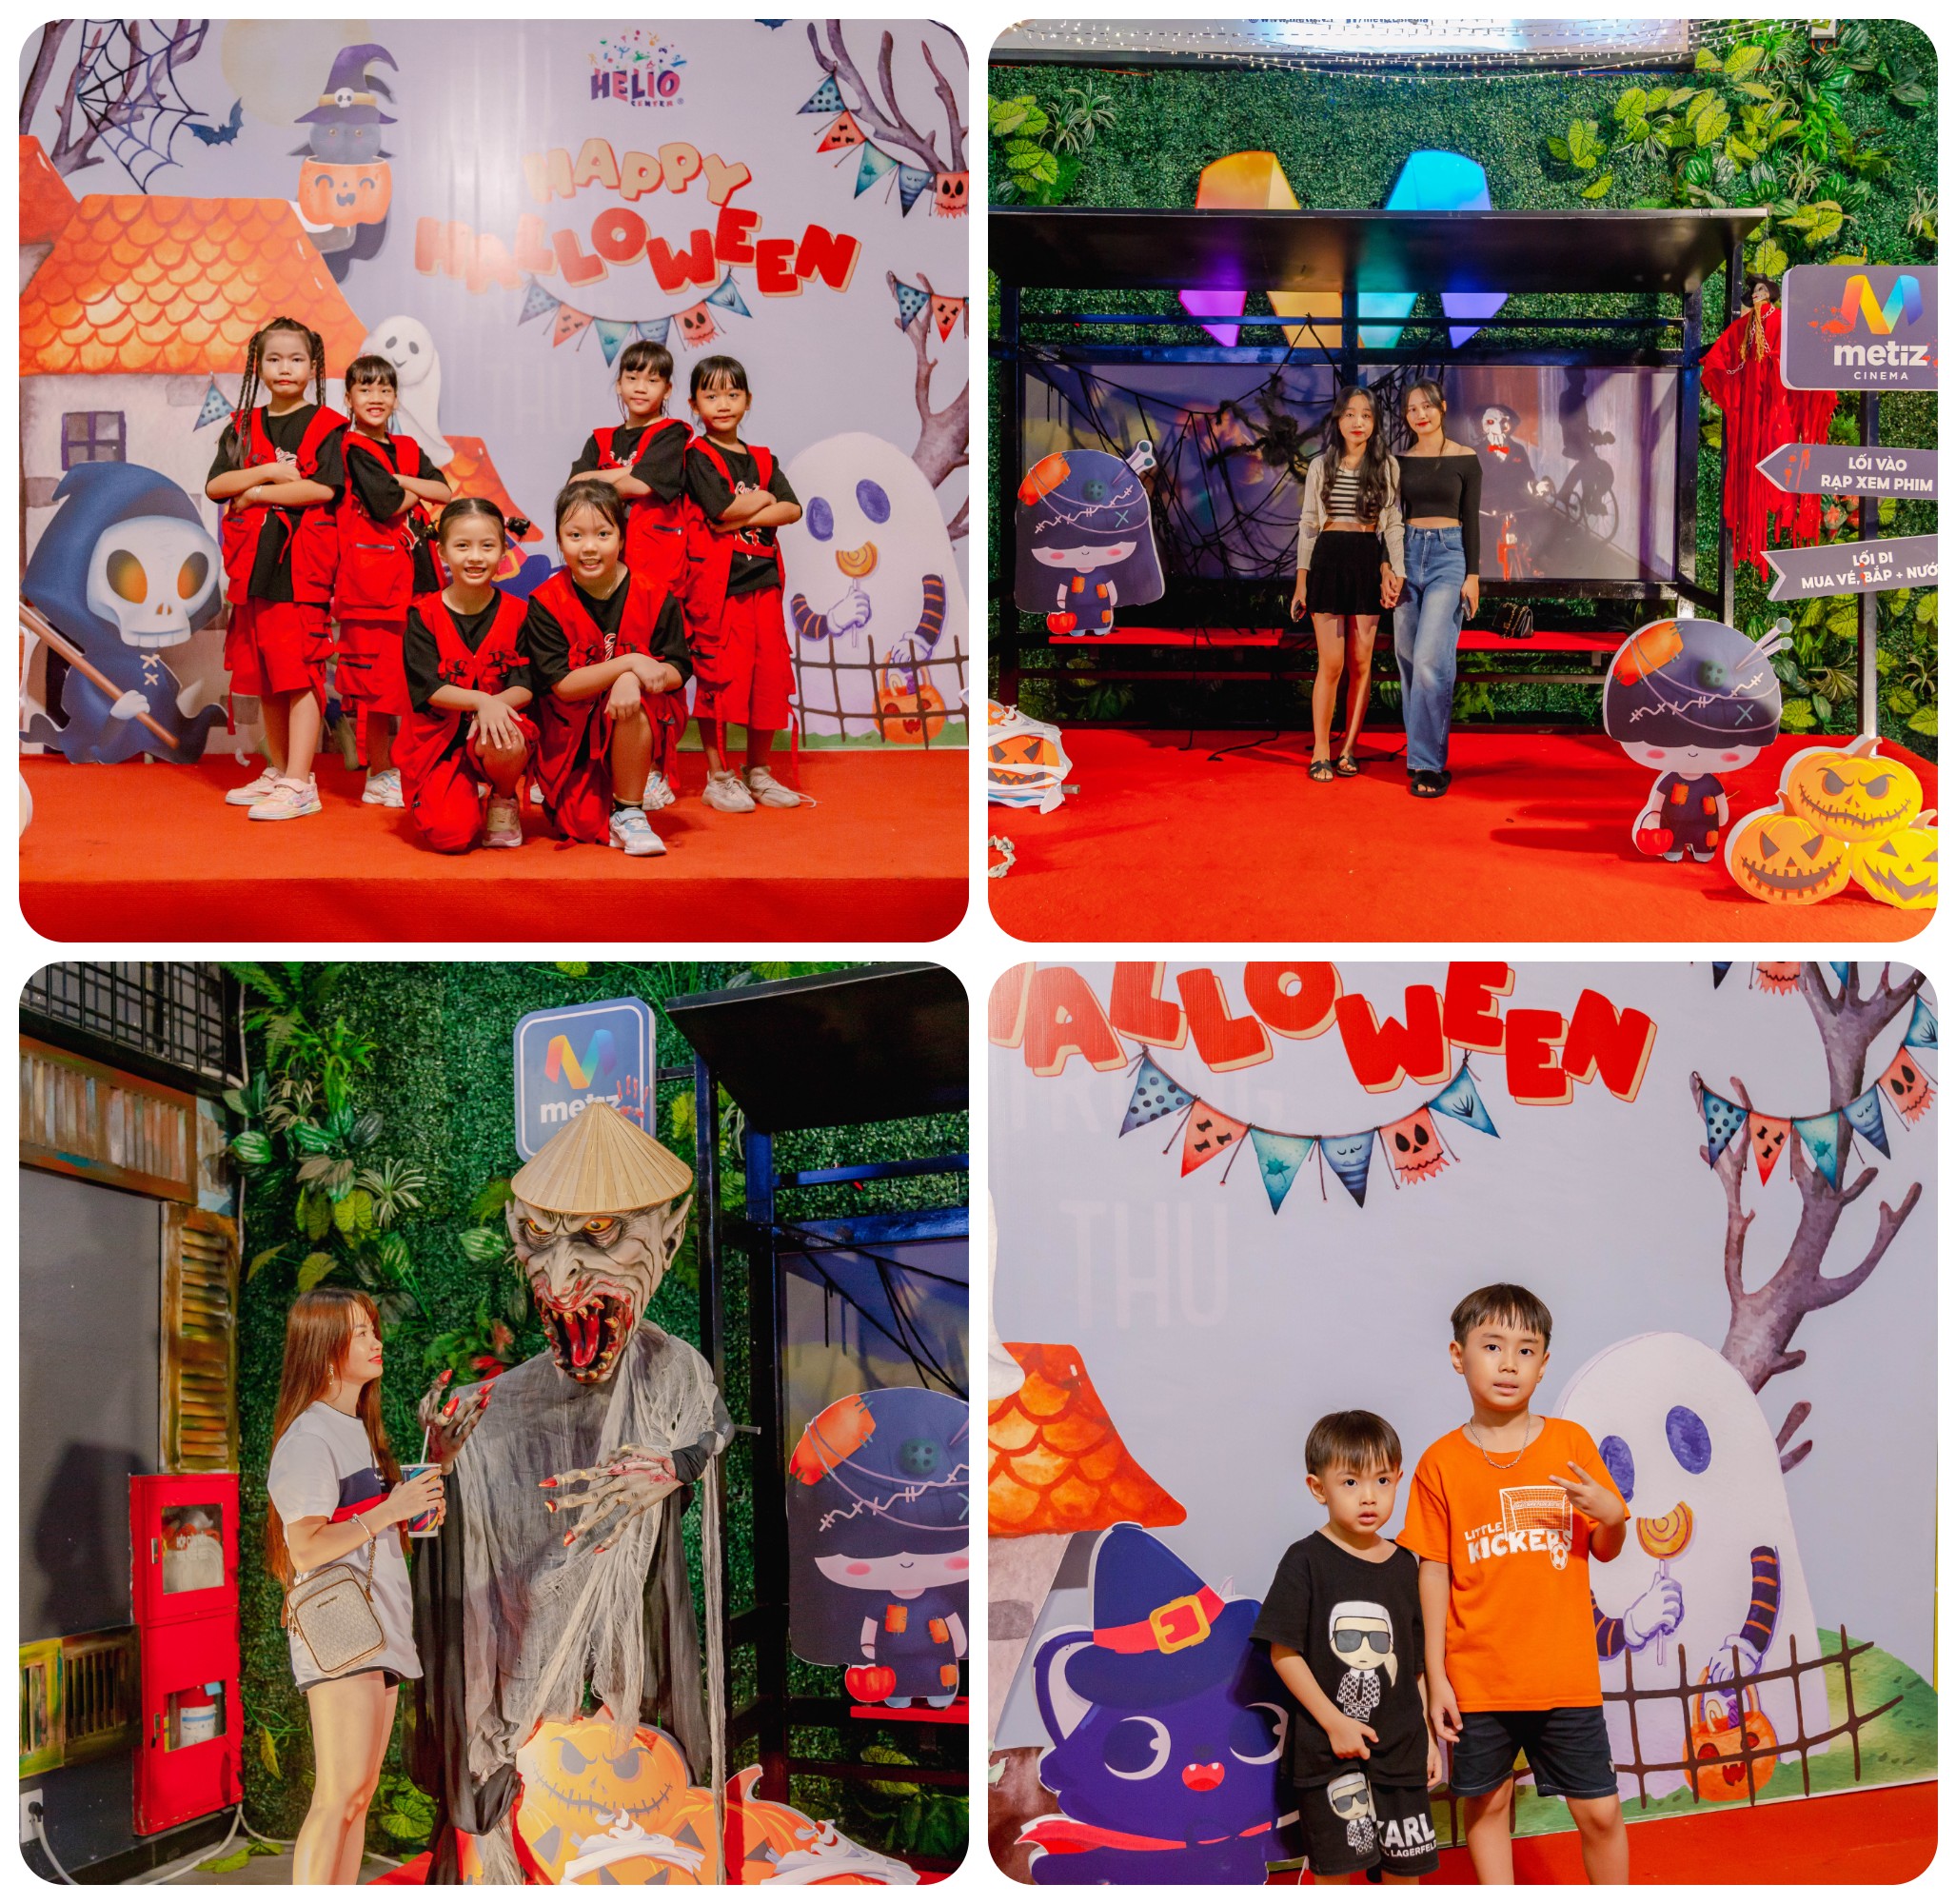 địa điểm vui chơi Halloween ở Đà Nẵng